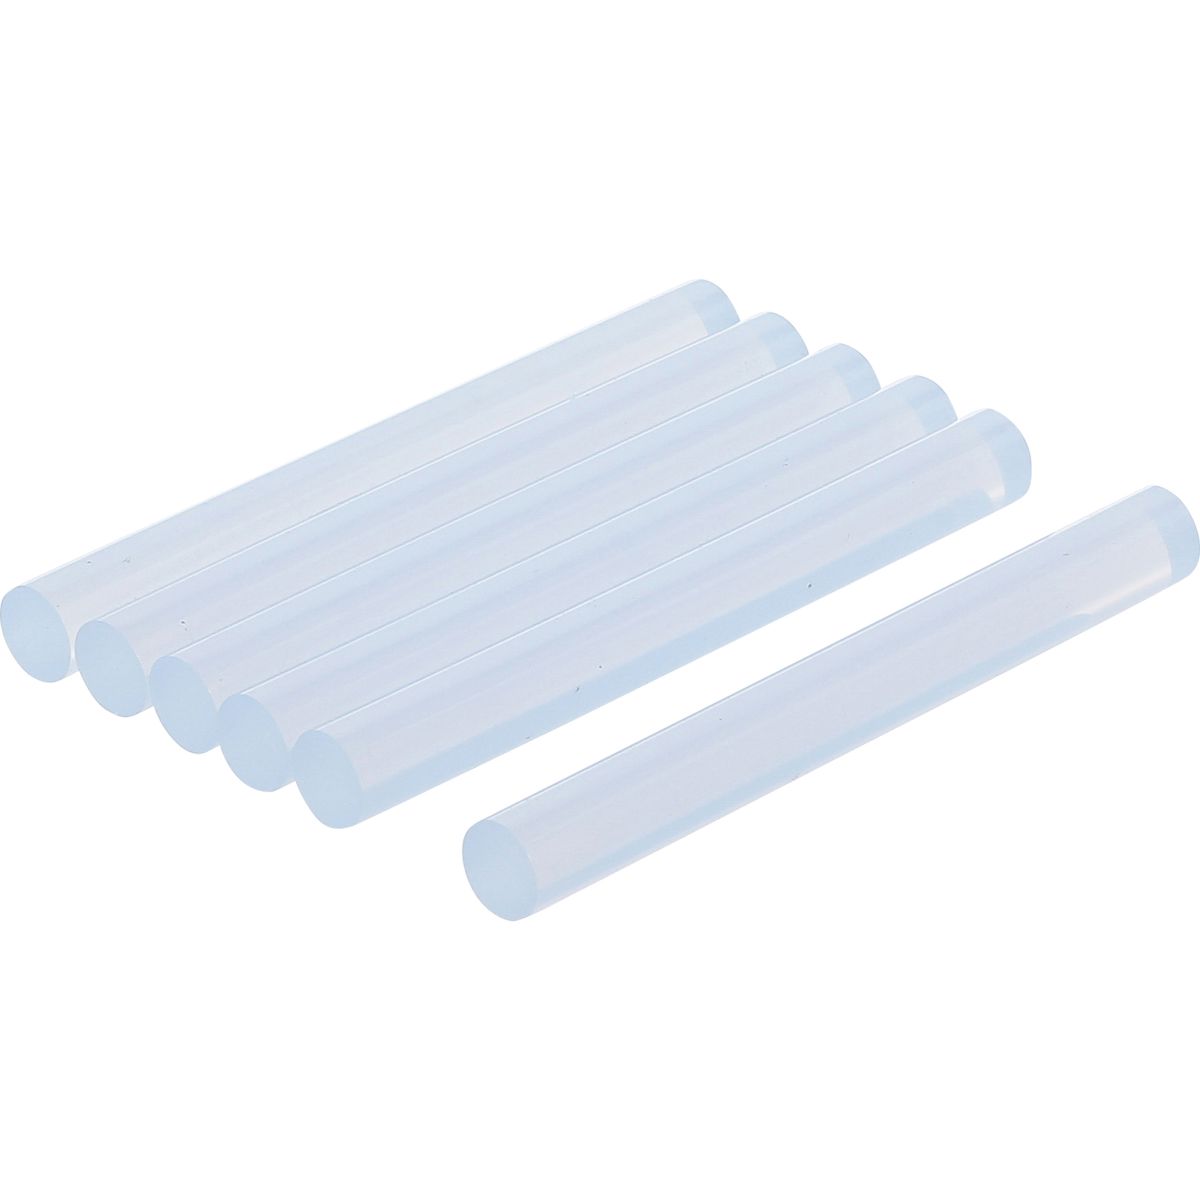 Barras de pegamento termofusible | transparente | Ø 11 mm, 100 mm | 6 piezas